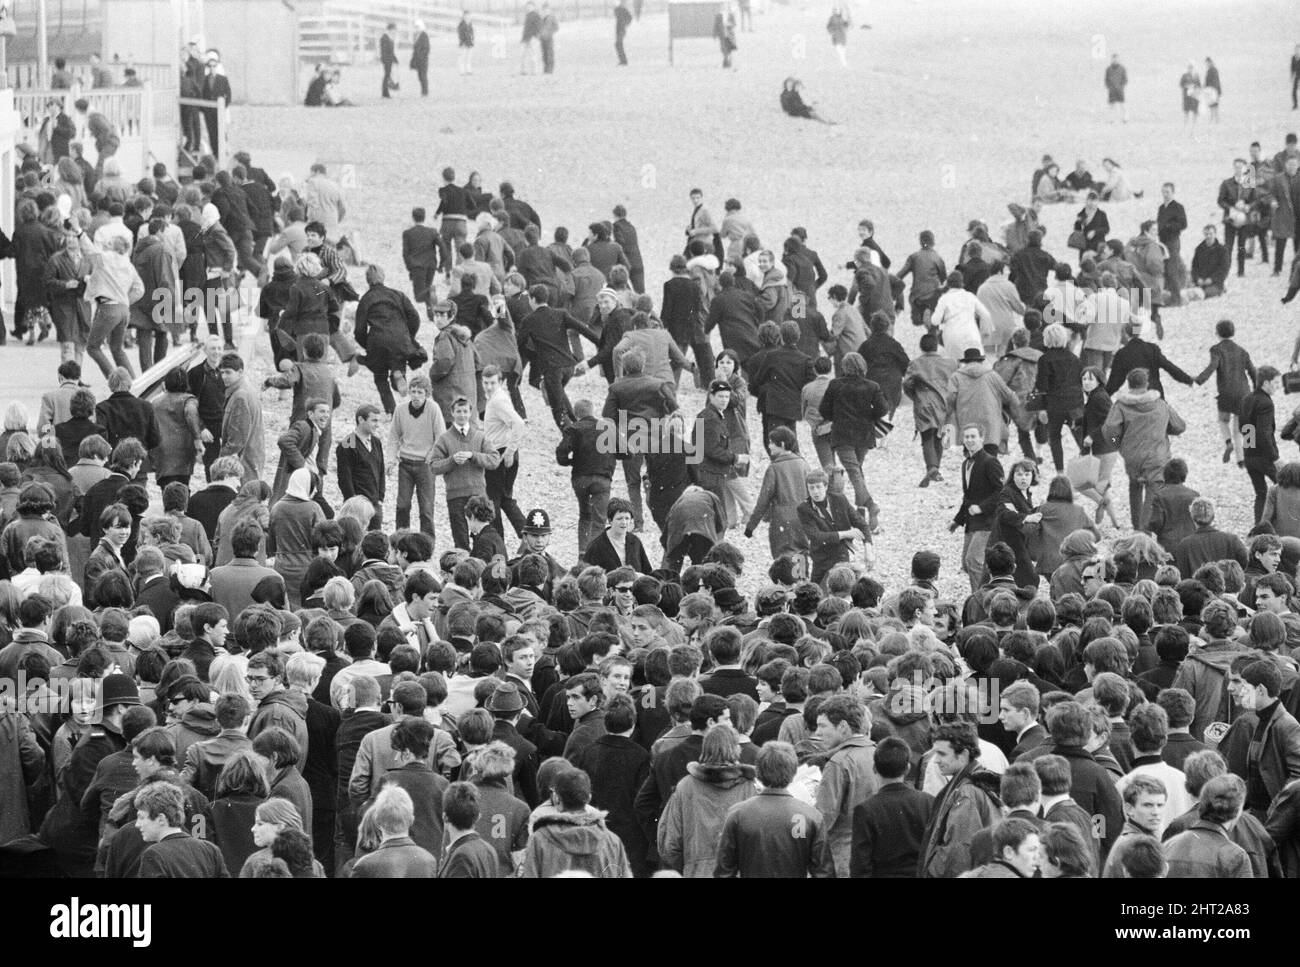 Die Mods und Rockers waren zwei widersprüchliche britische Jugendsubkulturen von Anfang bis Mitte 1960s. Die Berichterstattung über die Kämpfe von Mods und Rockern im Jahr 1964 löste eine moralische Panik über britische Jugendliche aus, und die beiden Gruppen wurden als Volksteufel bezeichnet. Mods gerundet nach Zusammenstößen mit Rockern in Brighton. 18.. April 1965. Stockfoto